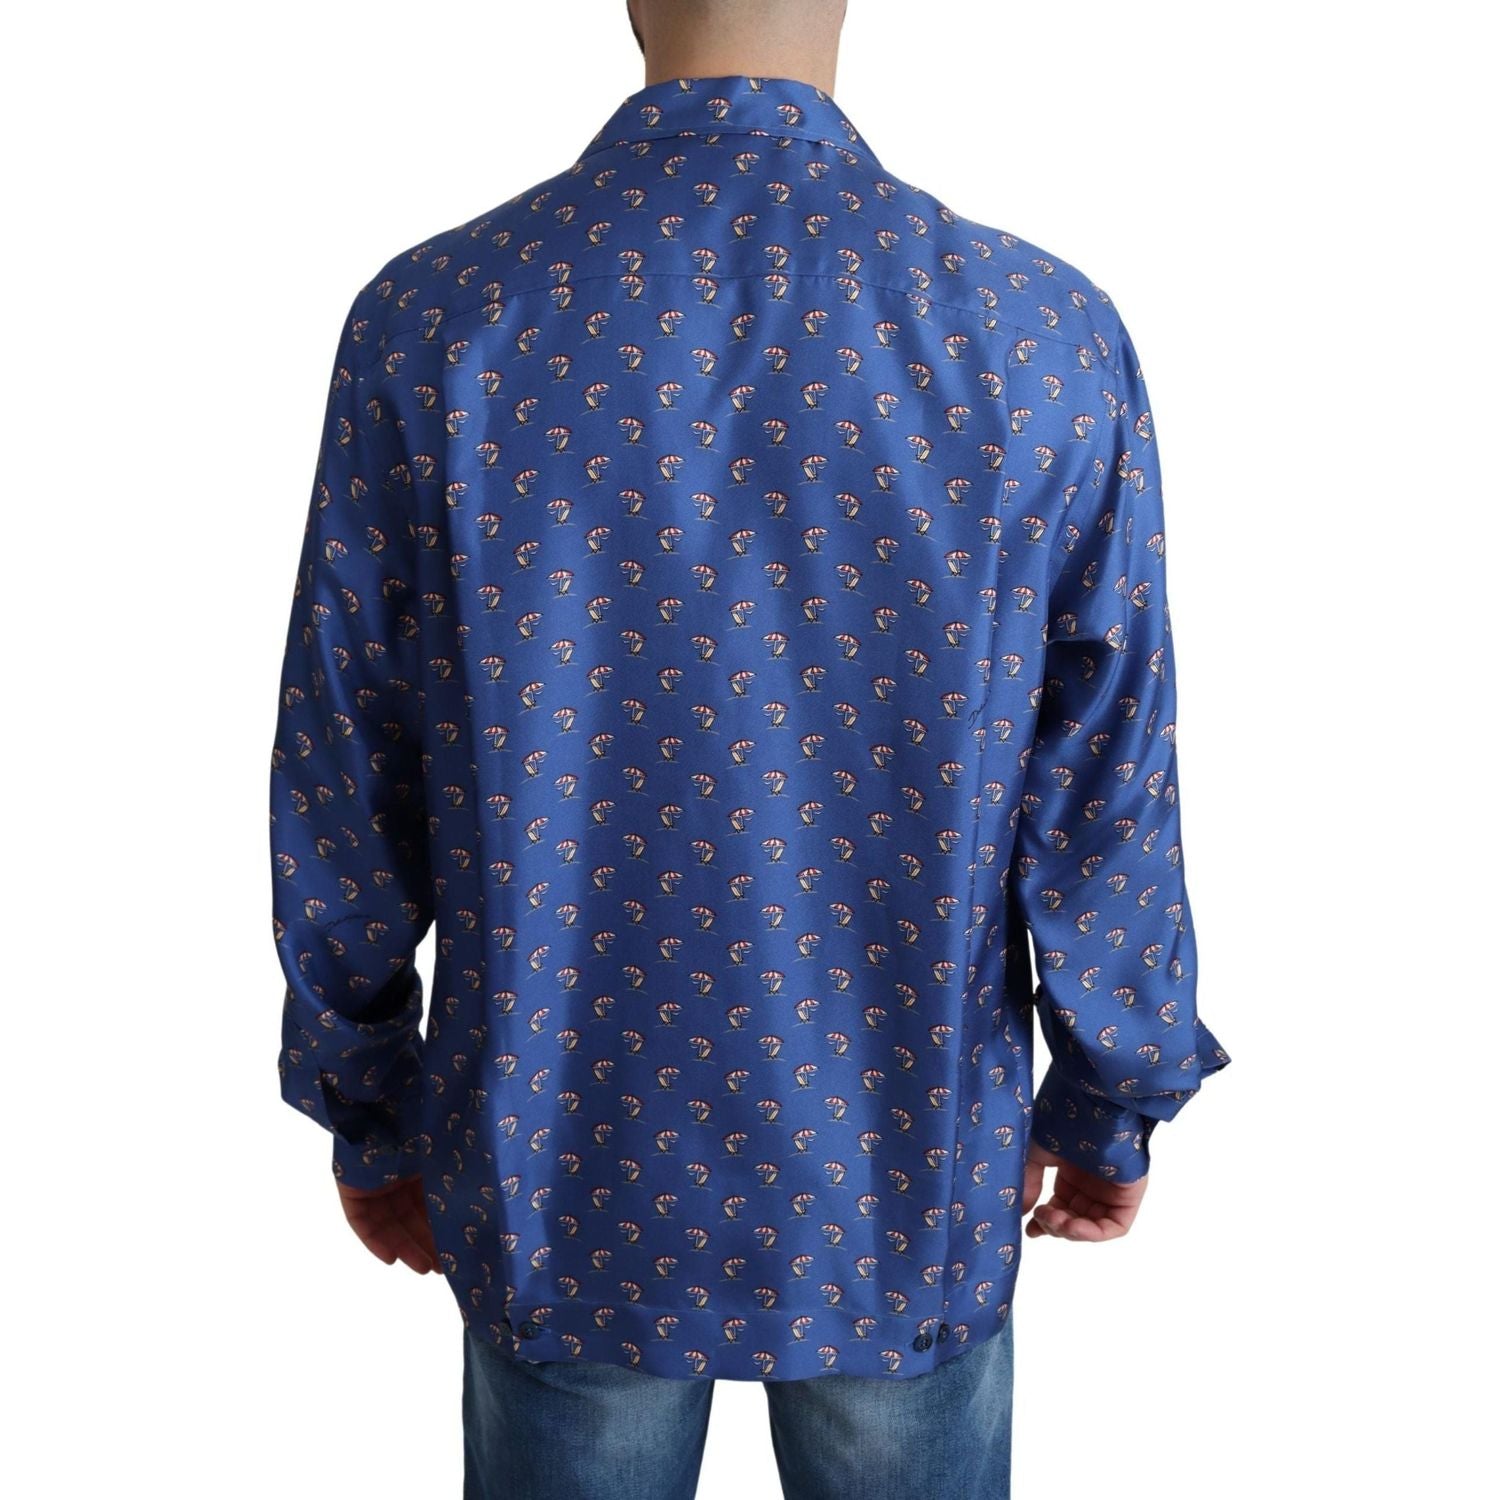 Dolce & Gabbana | Blue Beach Chair Umbrella Print Silk Shirt | 559.00 - McRichard Designer Brands